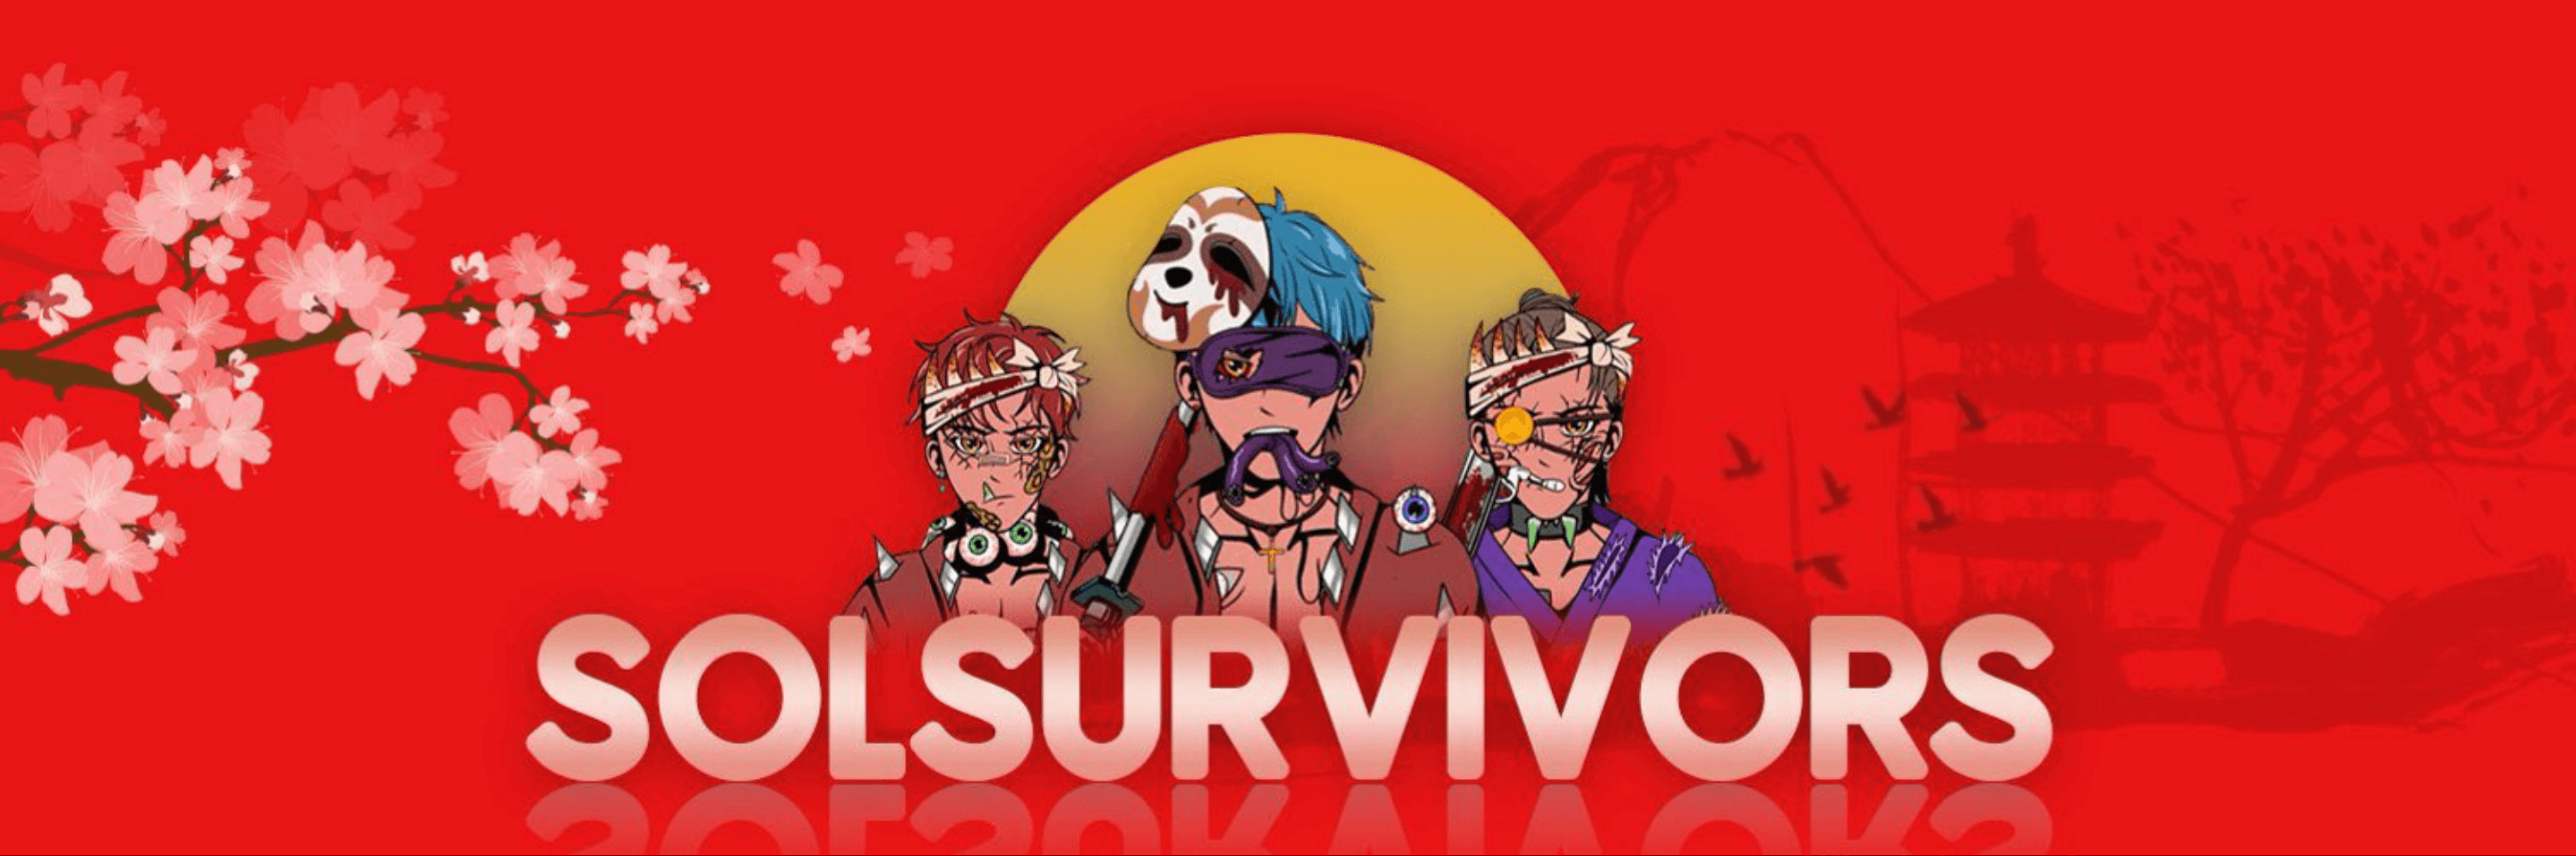 KingSurvivor banner